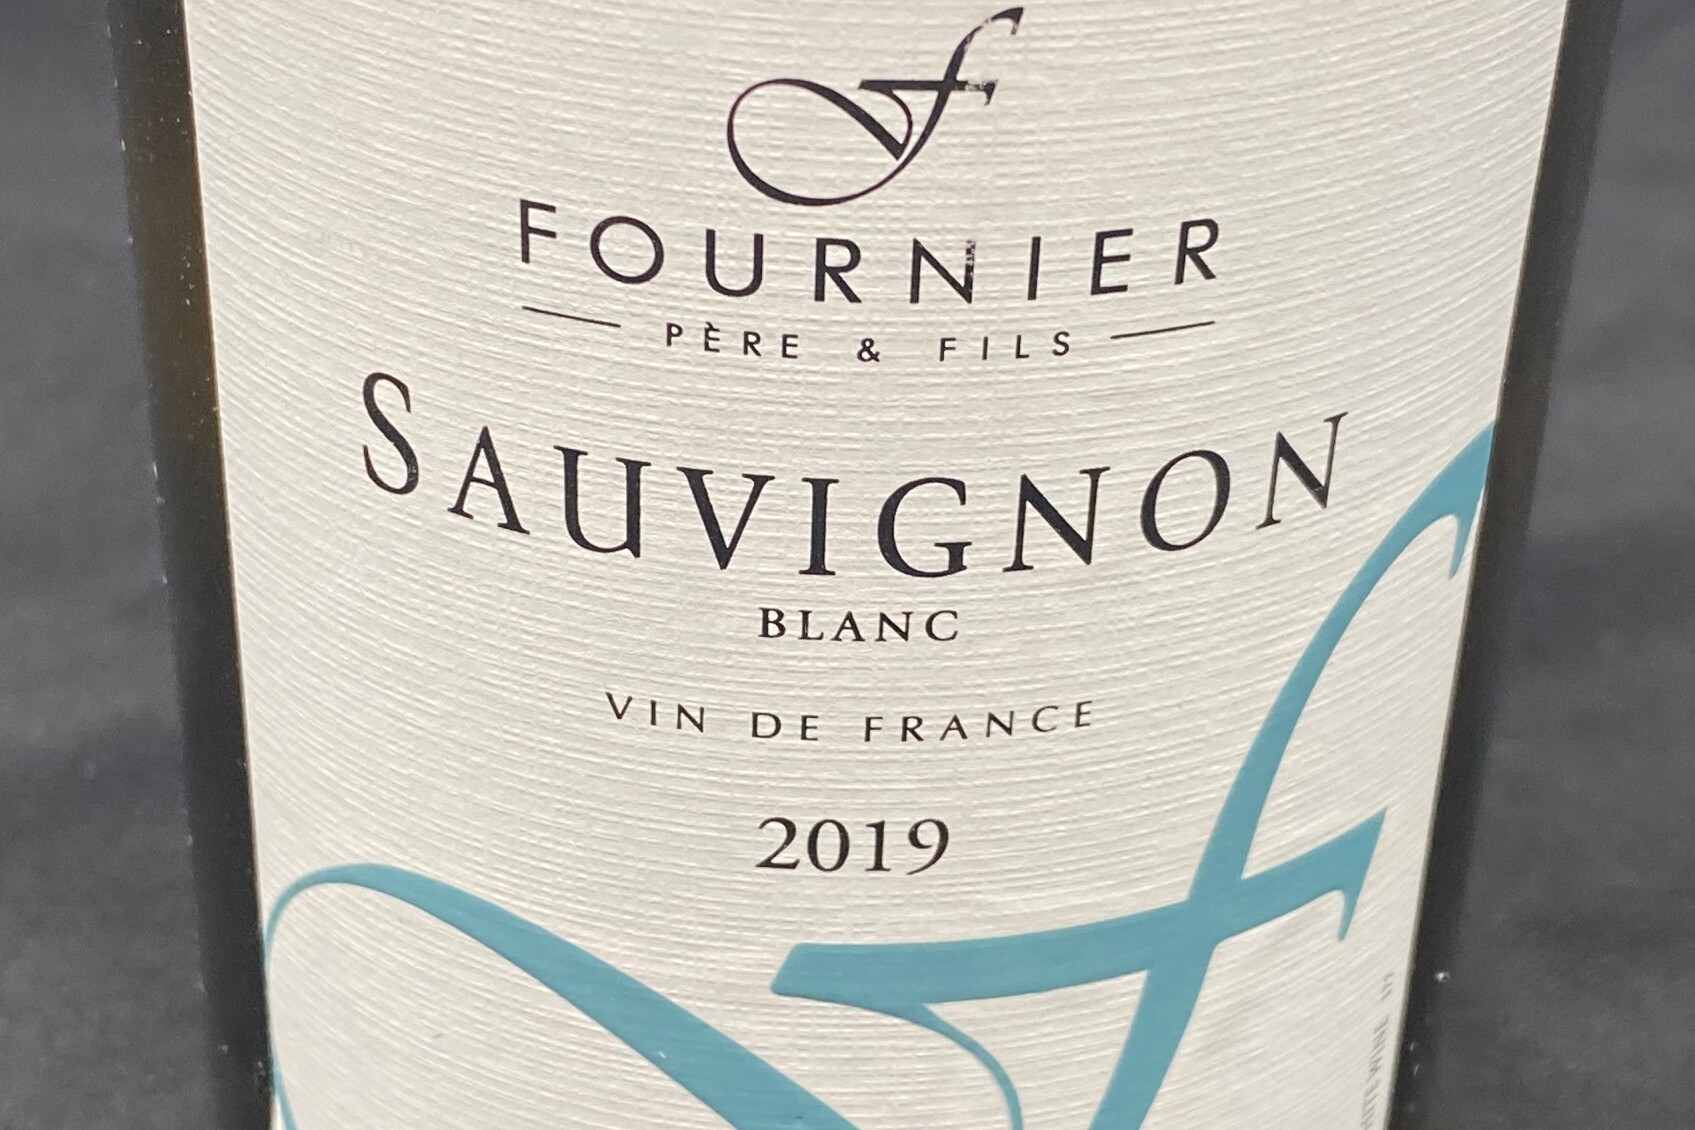 Fournier Pére & Fils, Sauvignon Blanc (2019)